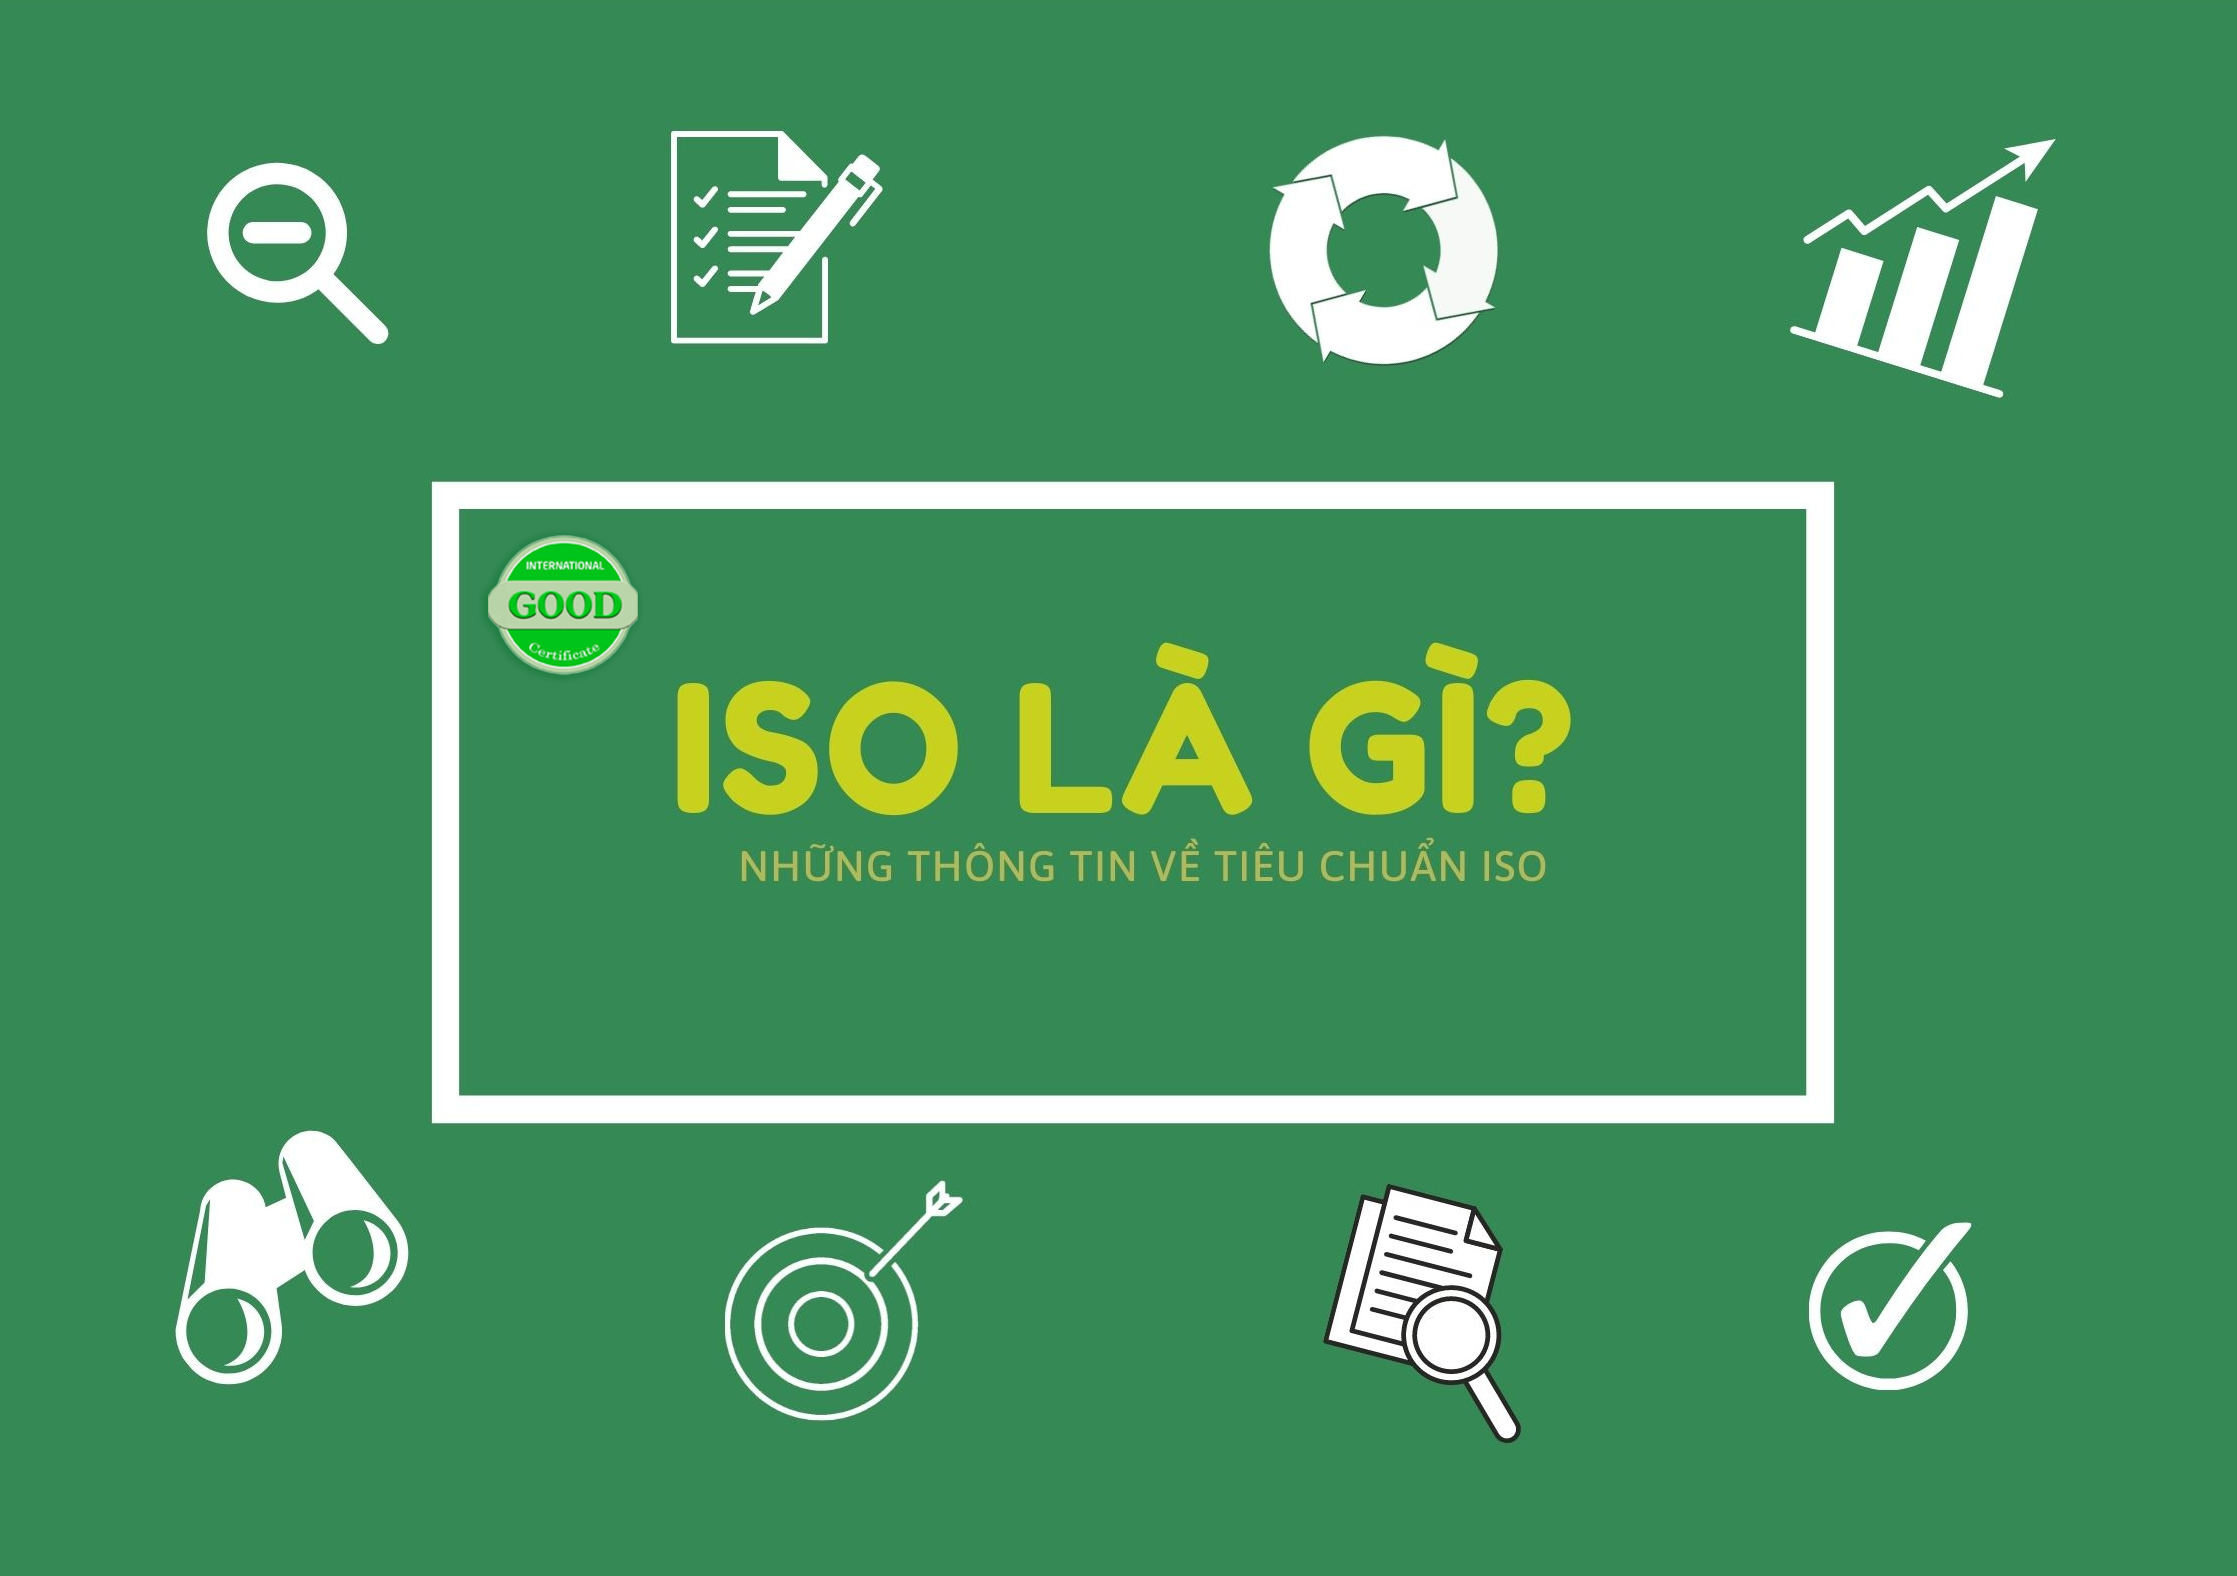 ISO là gì?Tìm hiểu vai trò của tiêu chuẩn ISO đối với doanh nghiệp